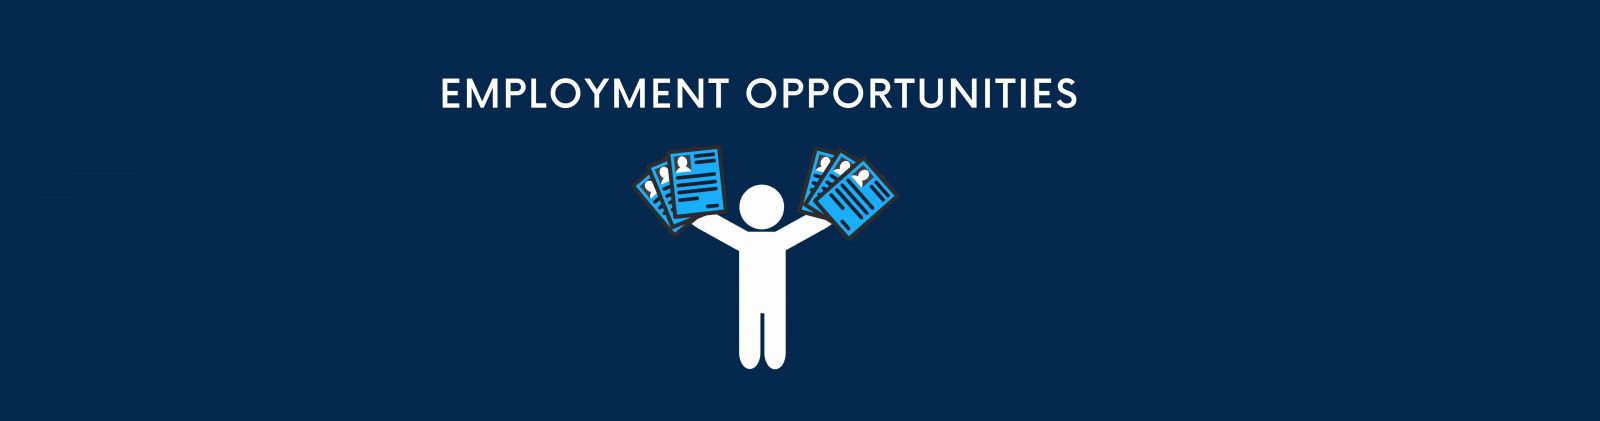 Employment Opportunities banner